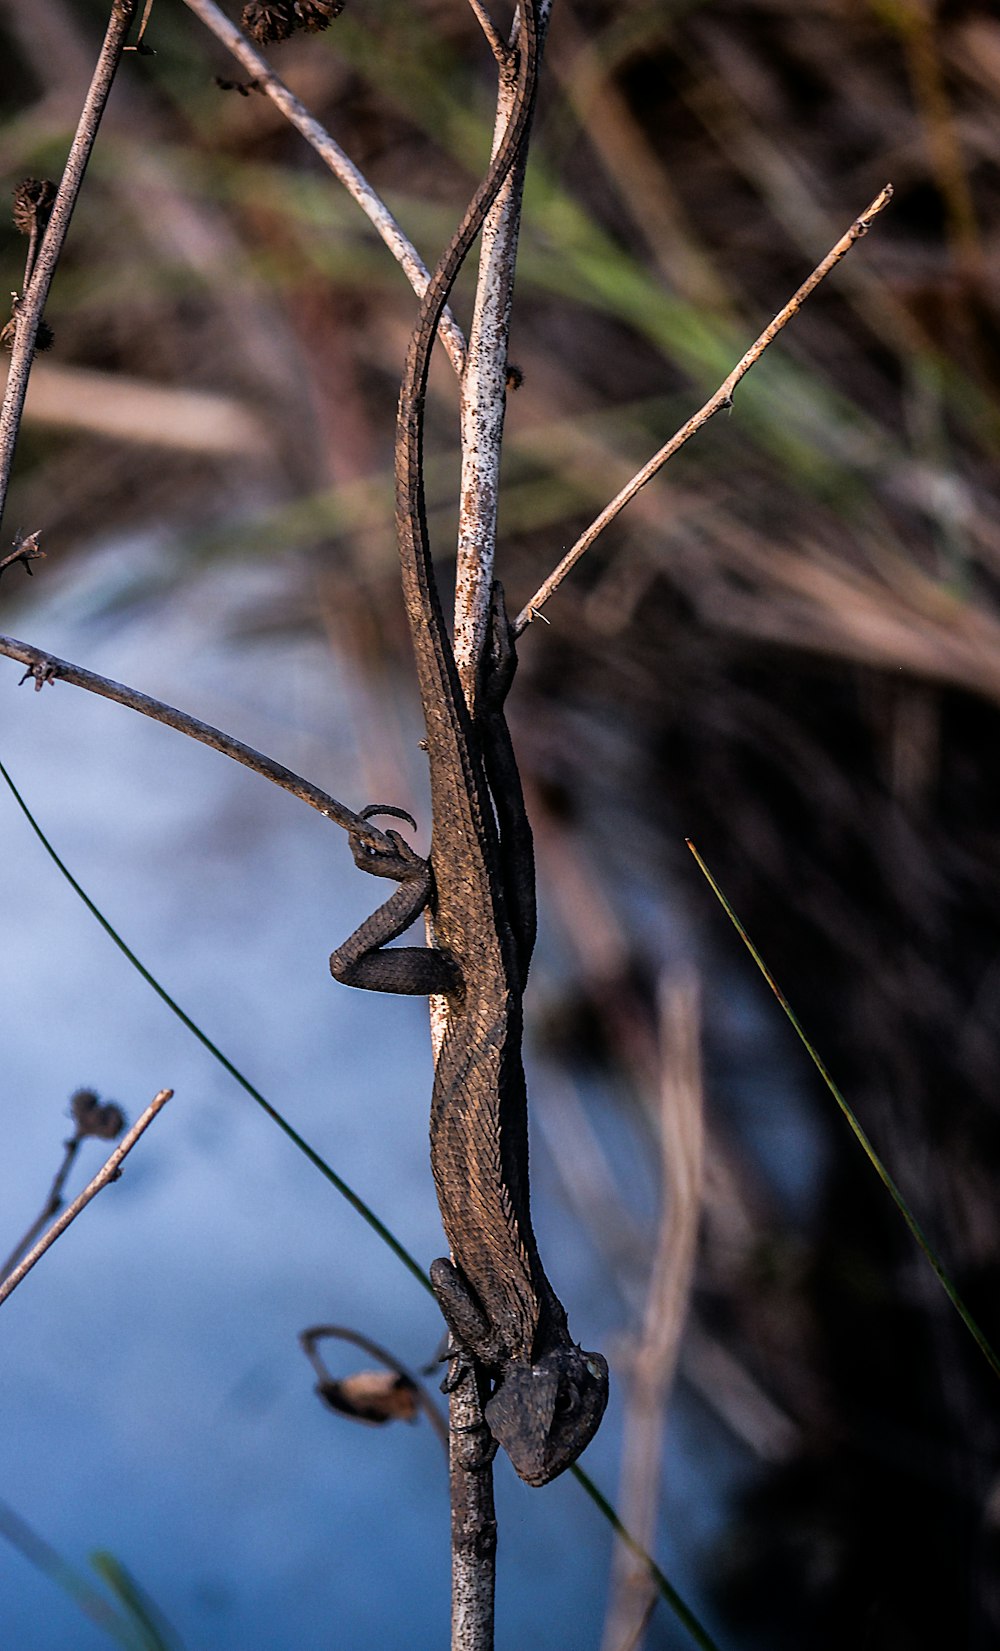 Un lagarto trepando por la rama de un árbol junto a un cuerpo de agua